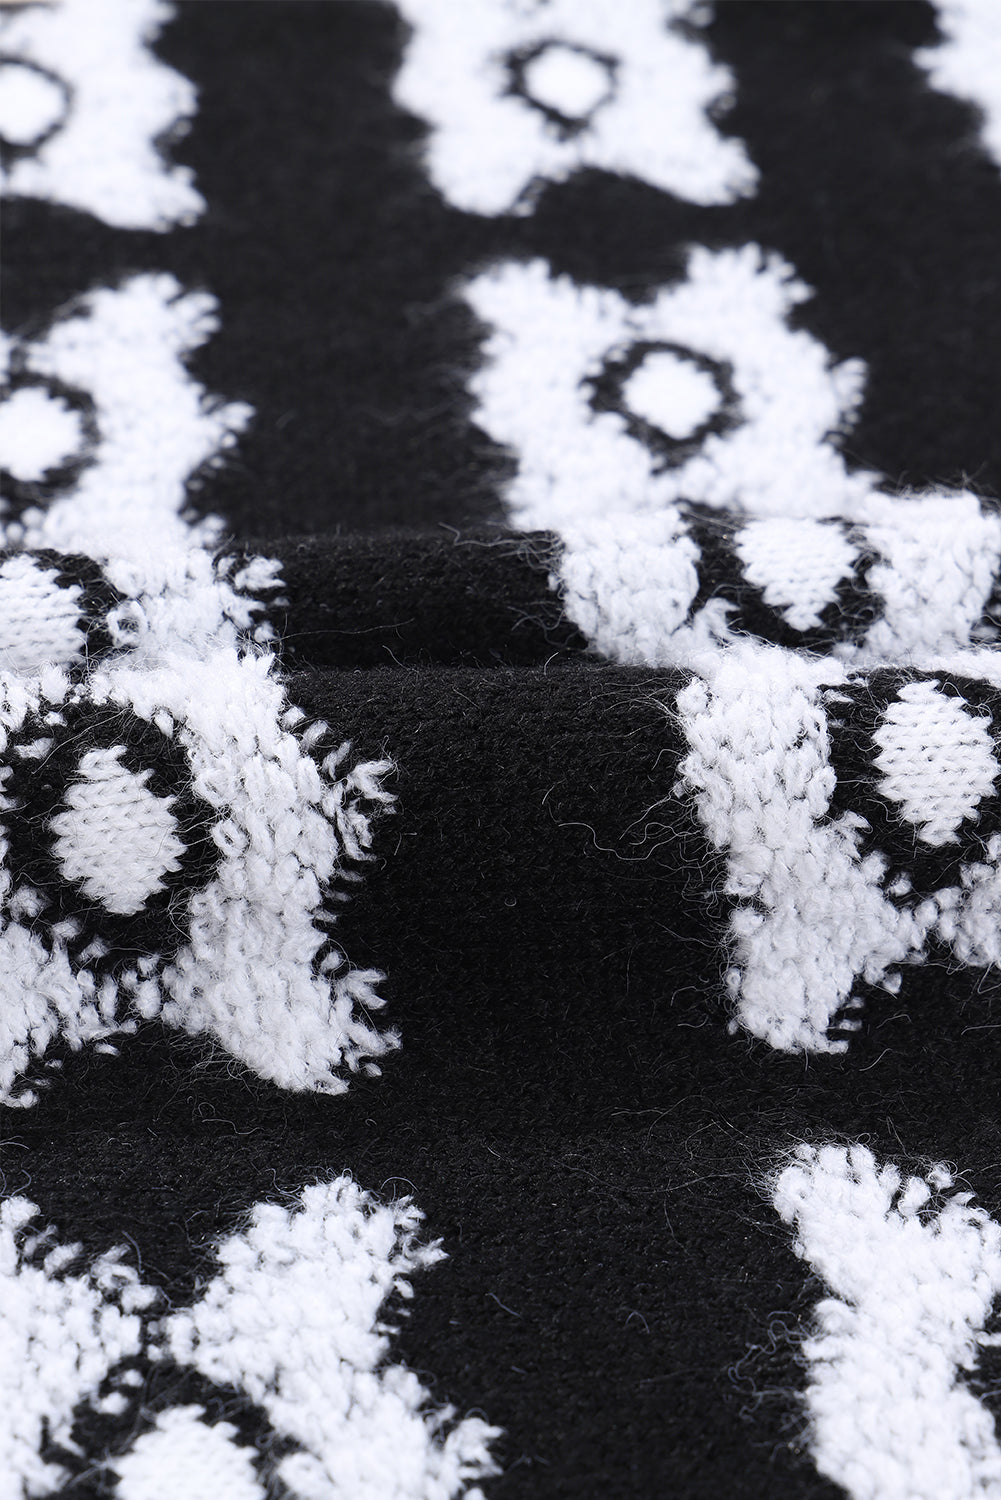 Maglione sfocato lavorato a maglia con motivo floreale retrò stampato bianco